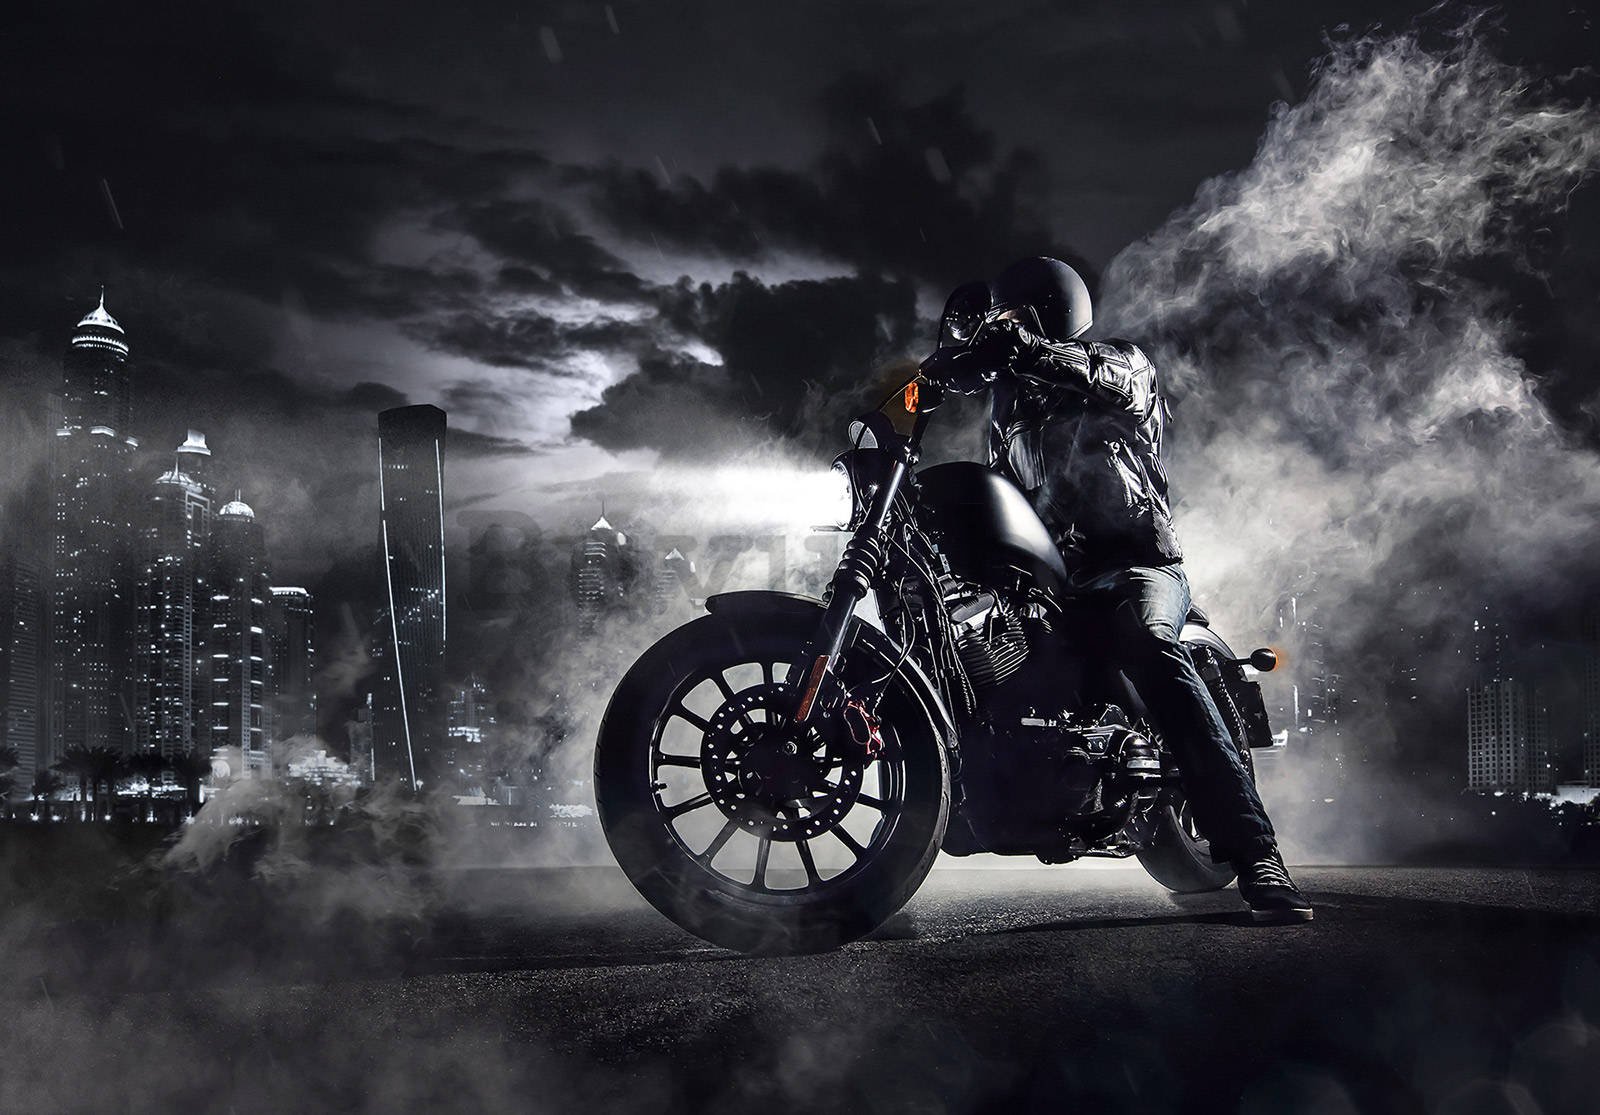 Vlies foto tapeta: Motociklista u noćnom gradu - 416x254 cm